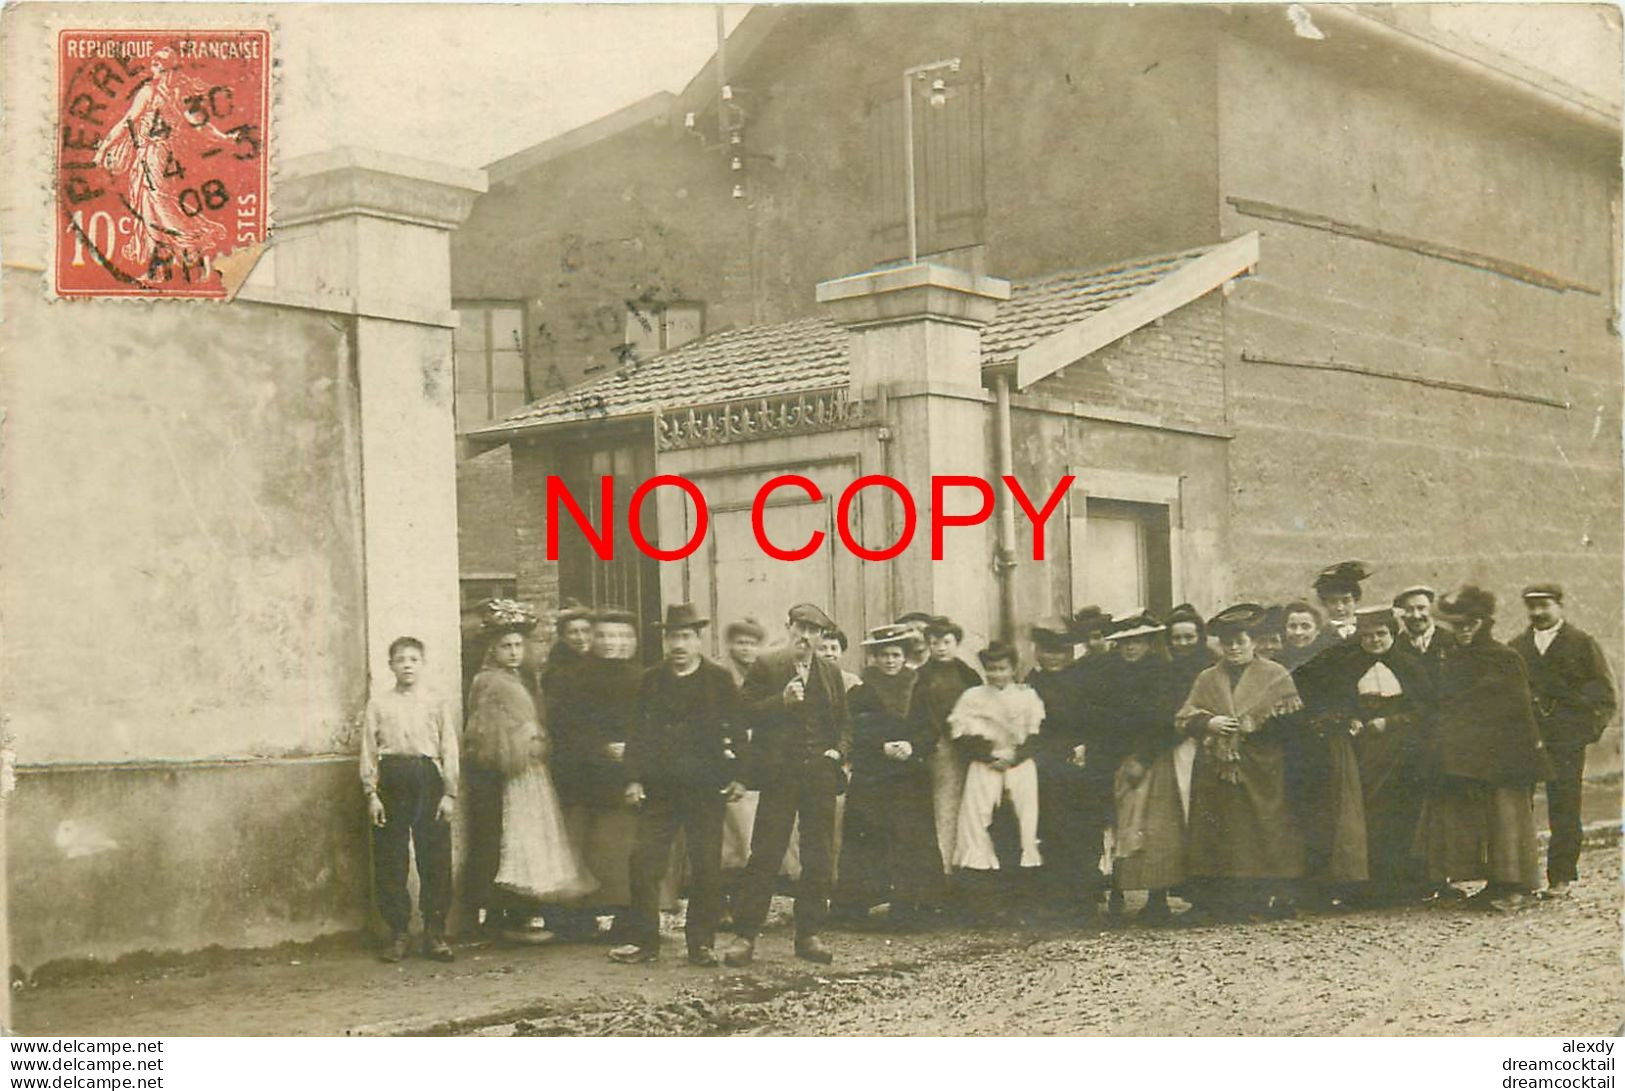 69 PIERRE BENITE. Ouvriers Ouvrières à L'Entrée De La Cristallerie De Lyon. Rare Photo Carte Postale 1908 - Pierre Benite